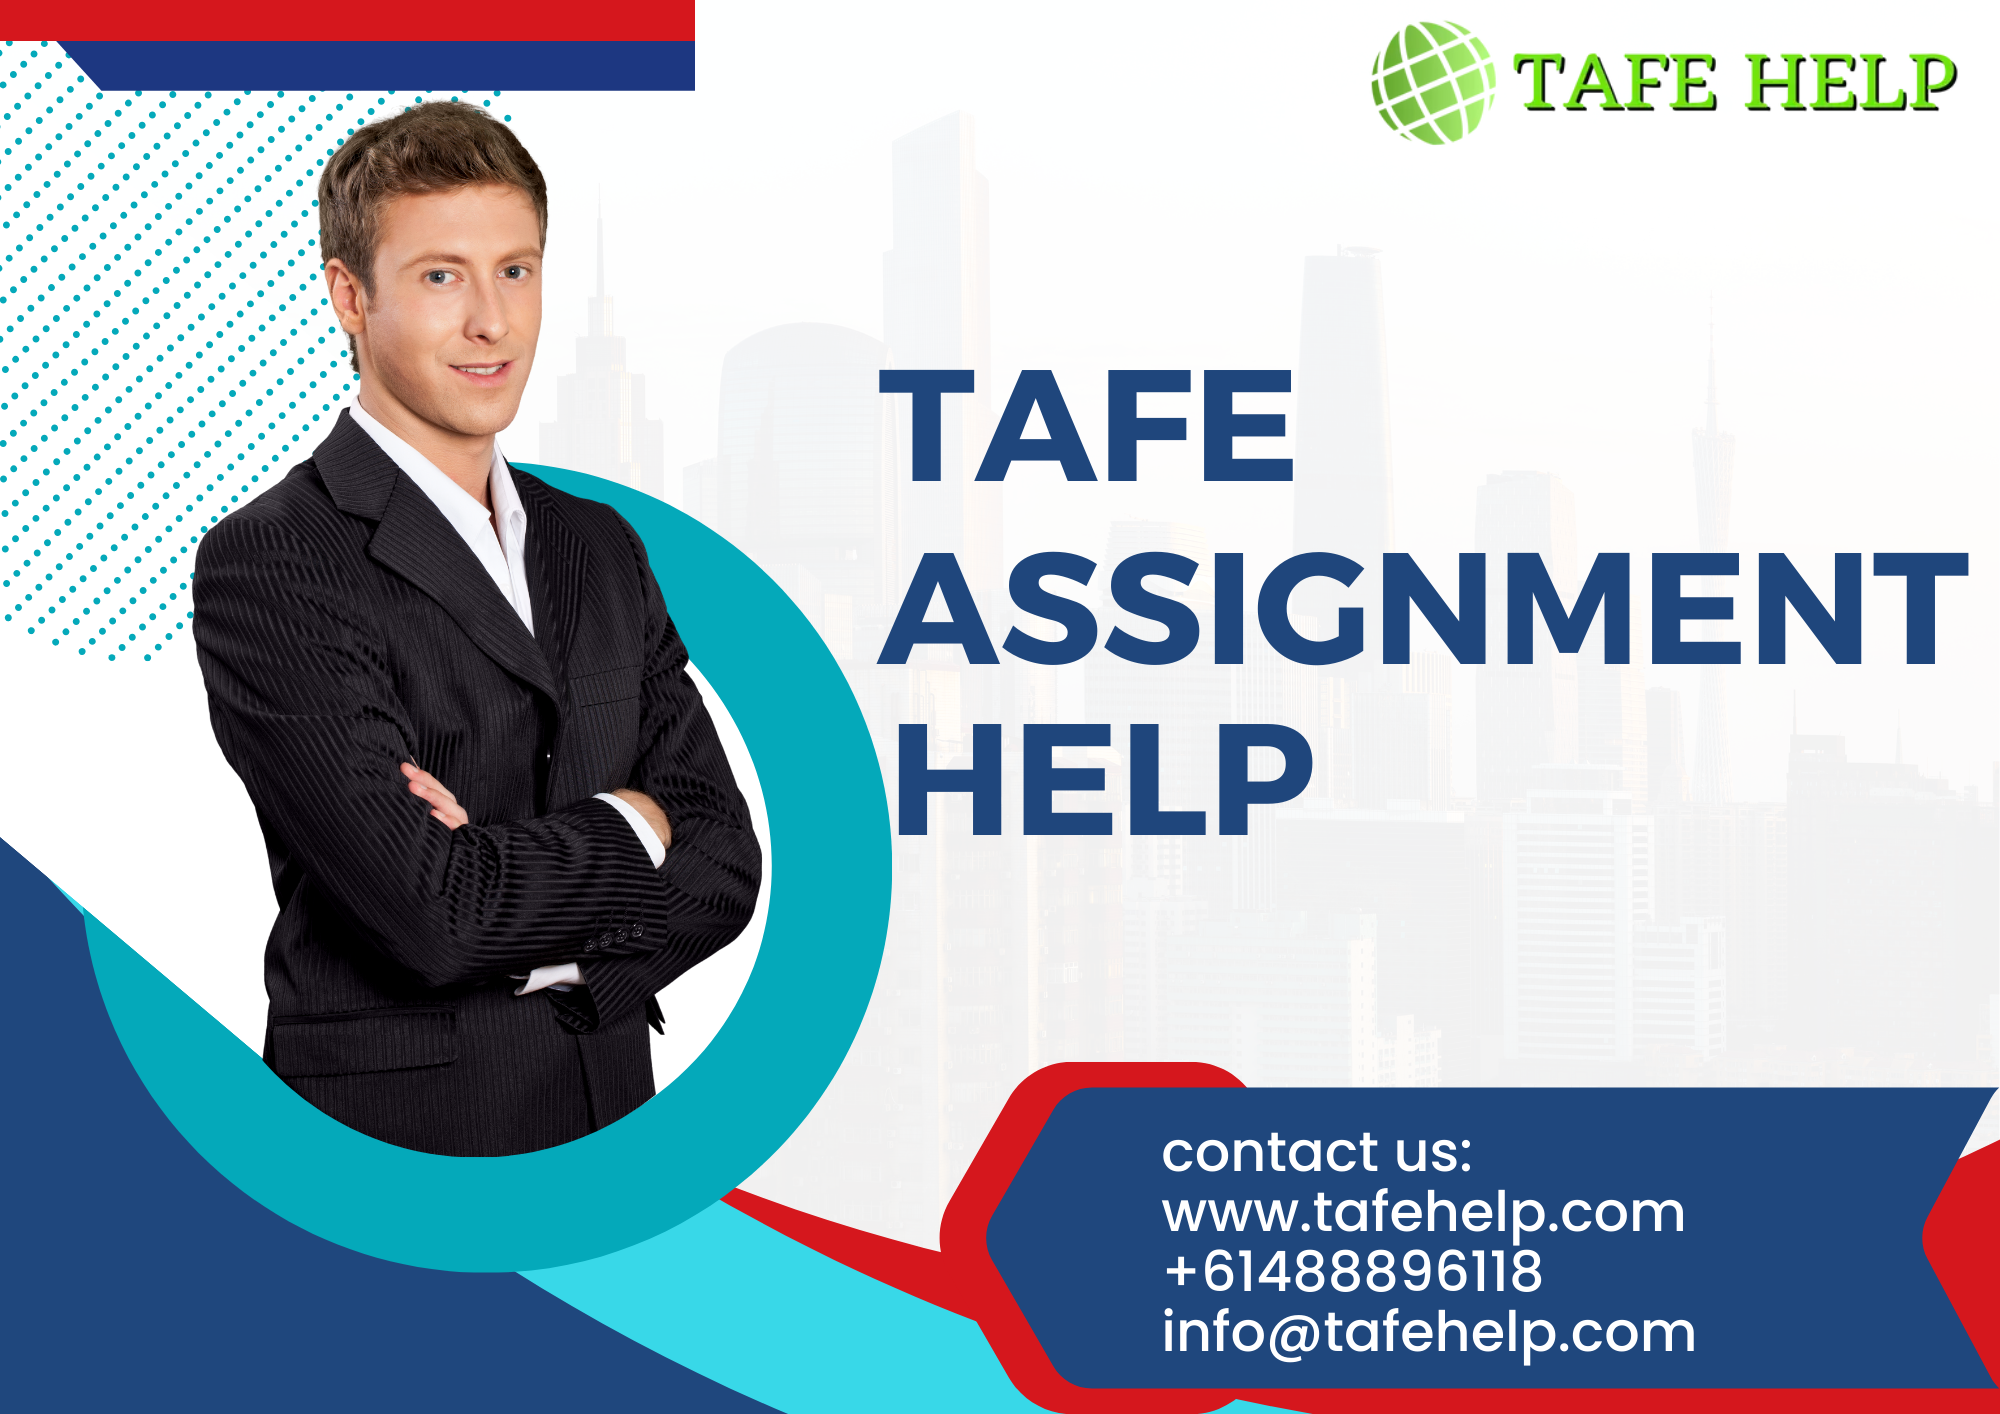 Tafe Assignment Help